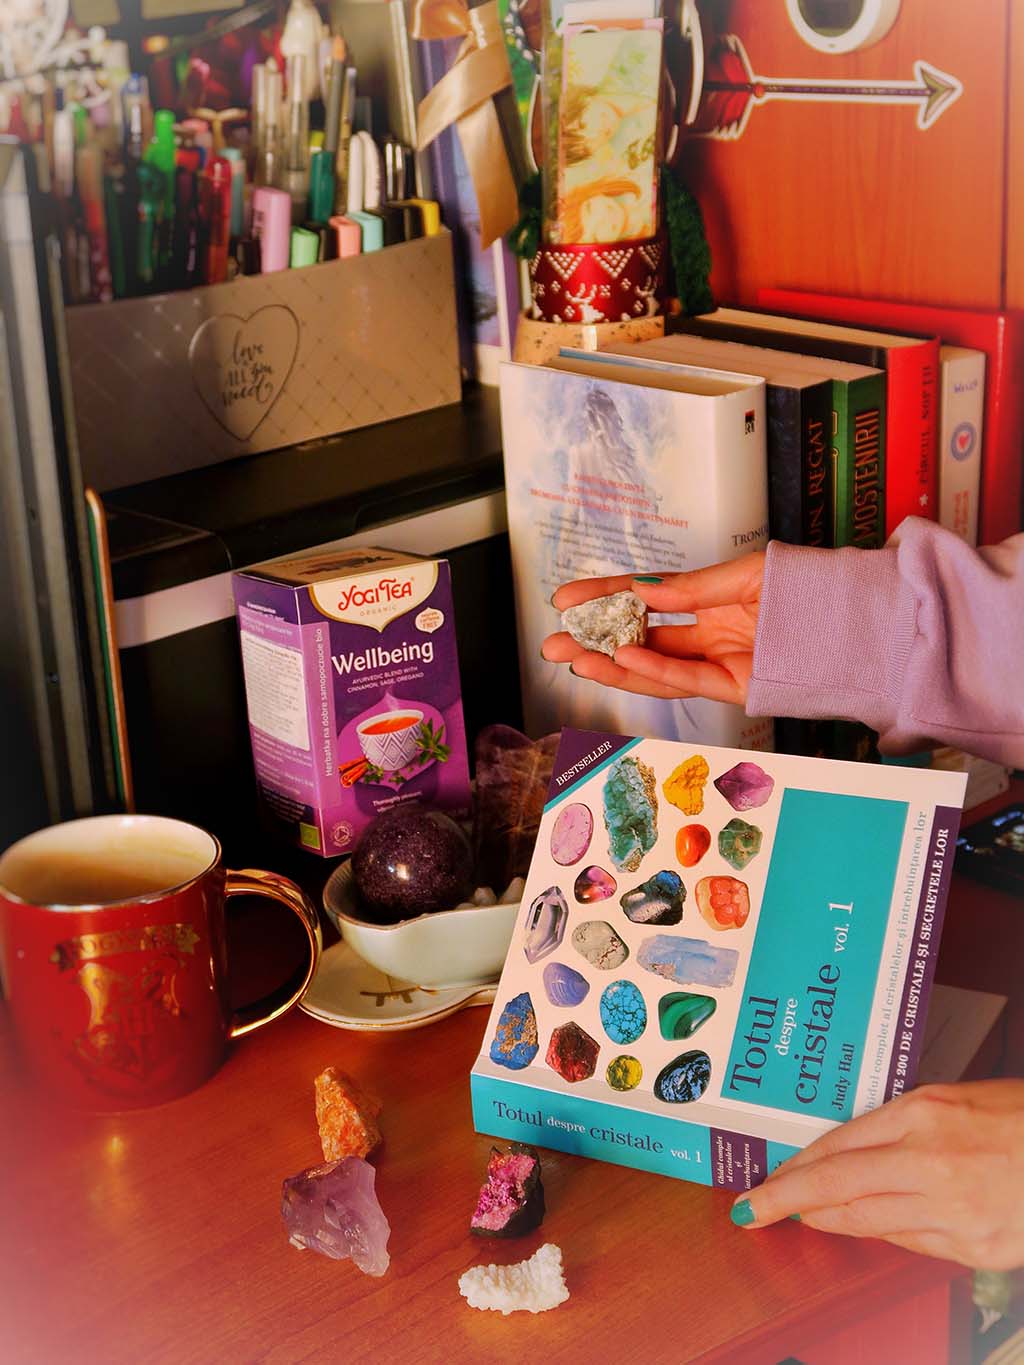 libris carti totul despre cristale judy hall ceai yogi tea wellbeing